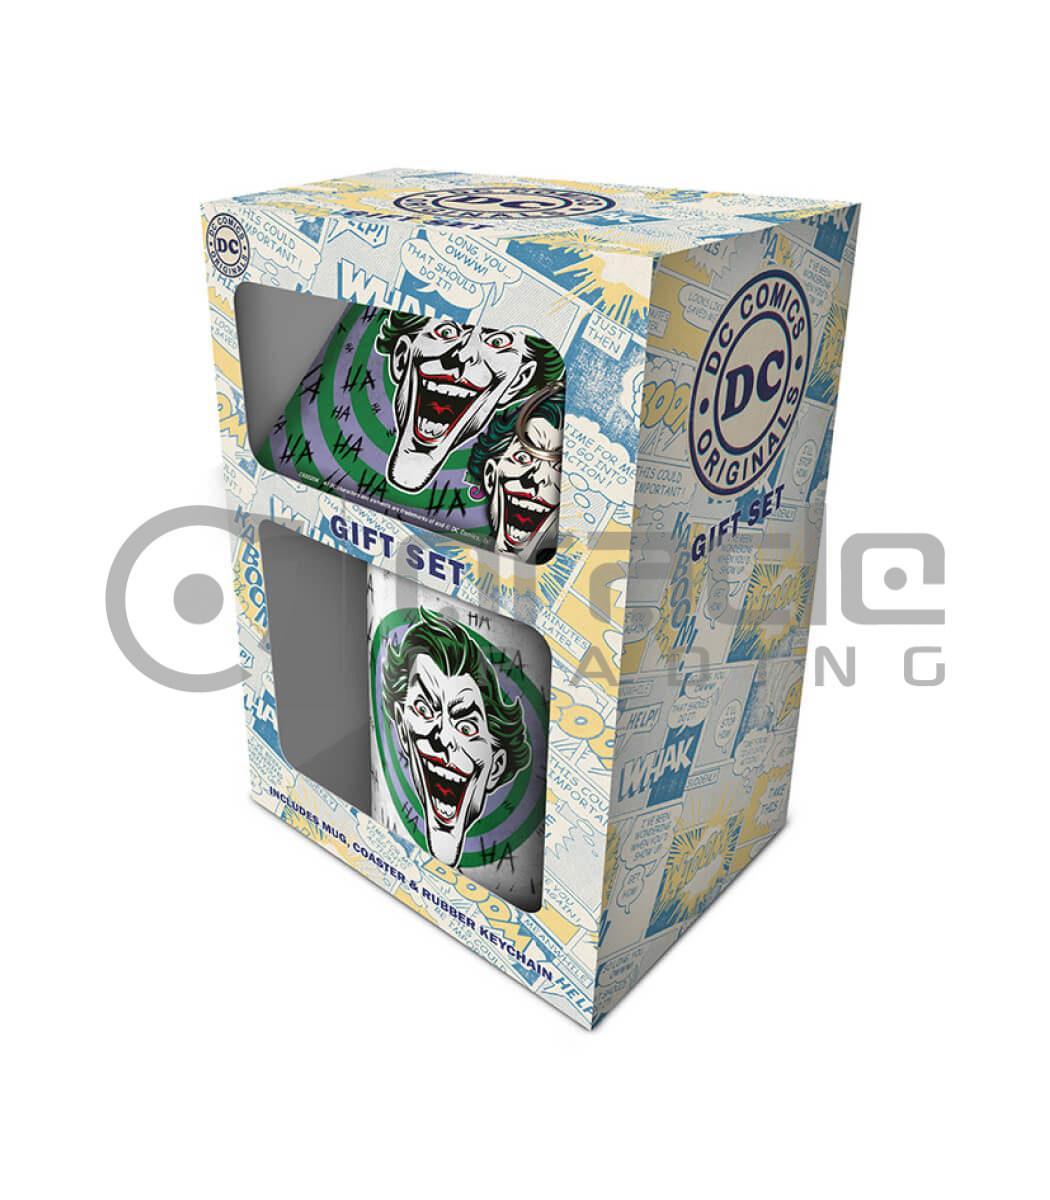 The Joker Gift Box